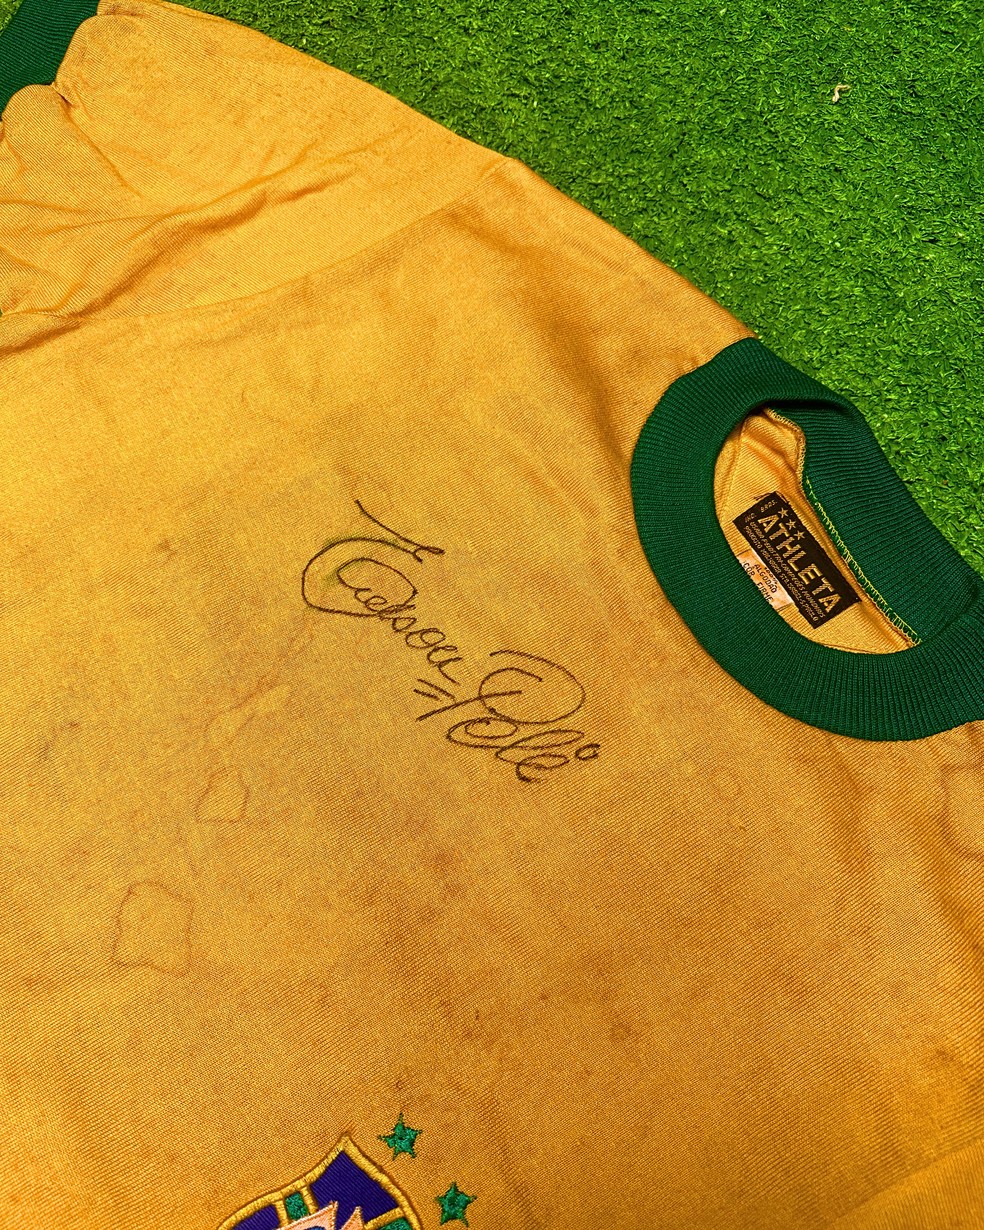 Autógrafo de Pelé em camisa da Seleção Brasileira de 1971 — Foto: Divulgação/Play for a Cause